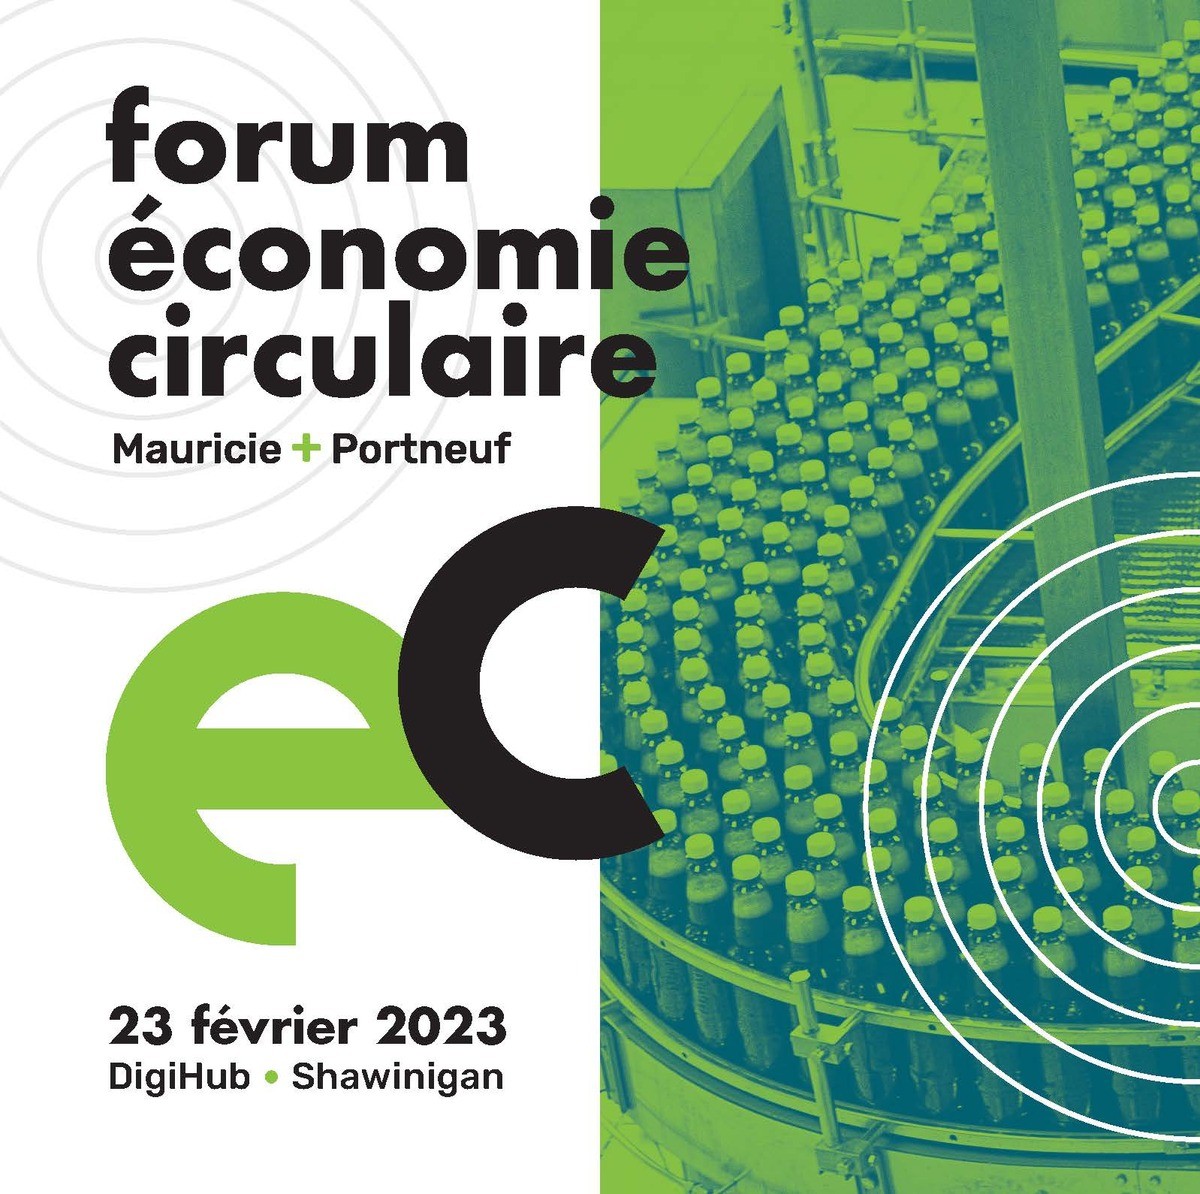 Forum économie circulaire Mauricie + Portneuf